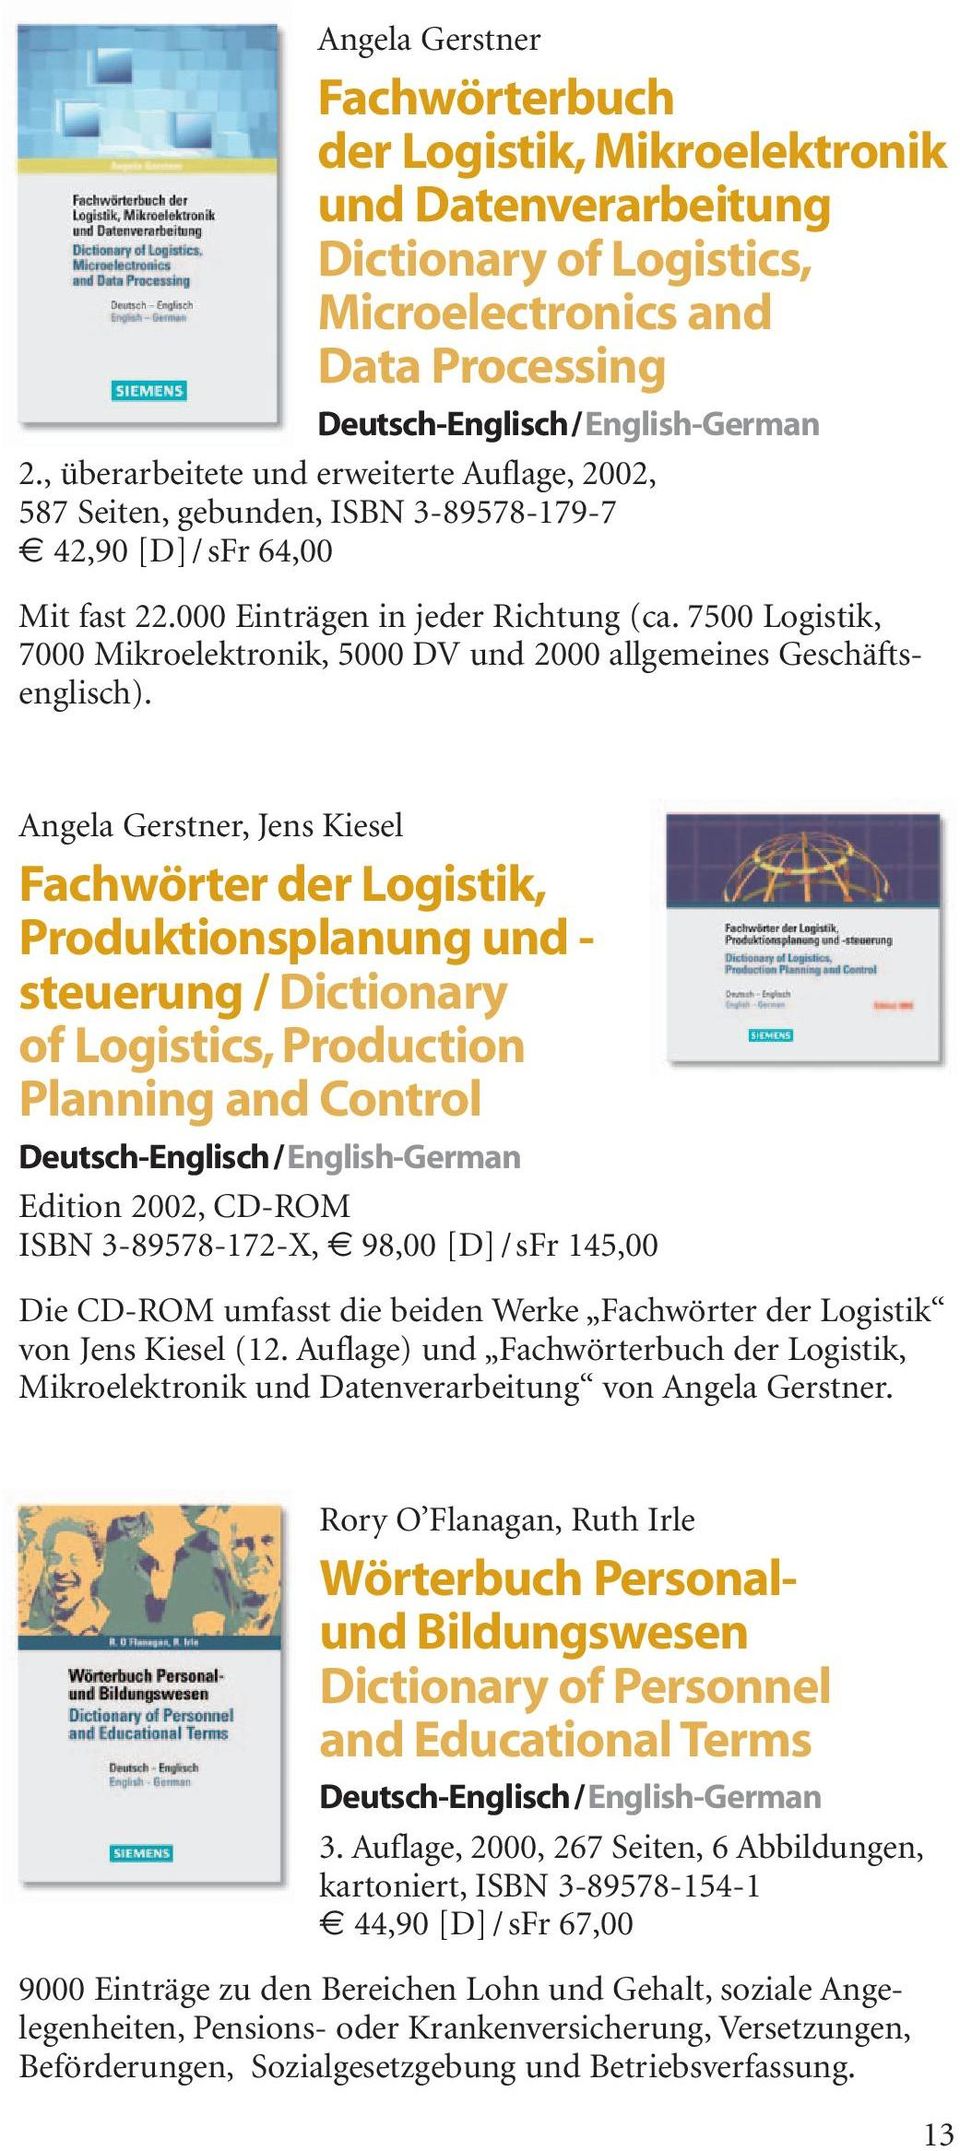 7500 Logistik, 7000 Mikroelektronik, 5000 DV und 2000 allgemeines Geschäftsenglisch).